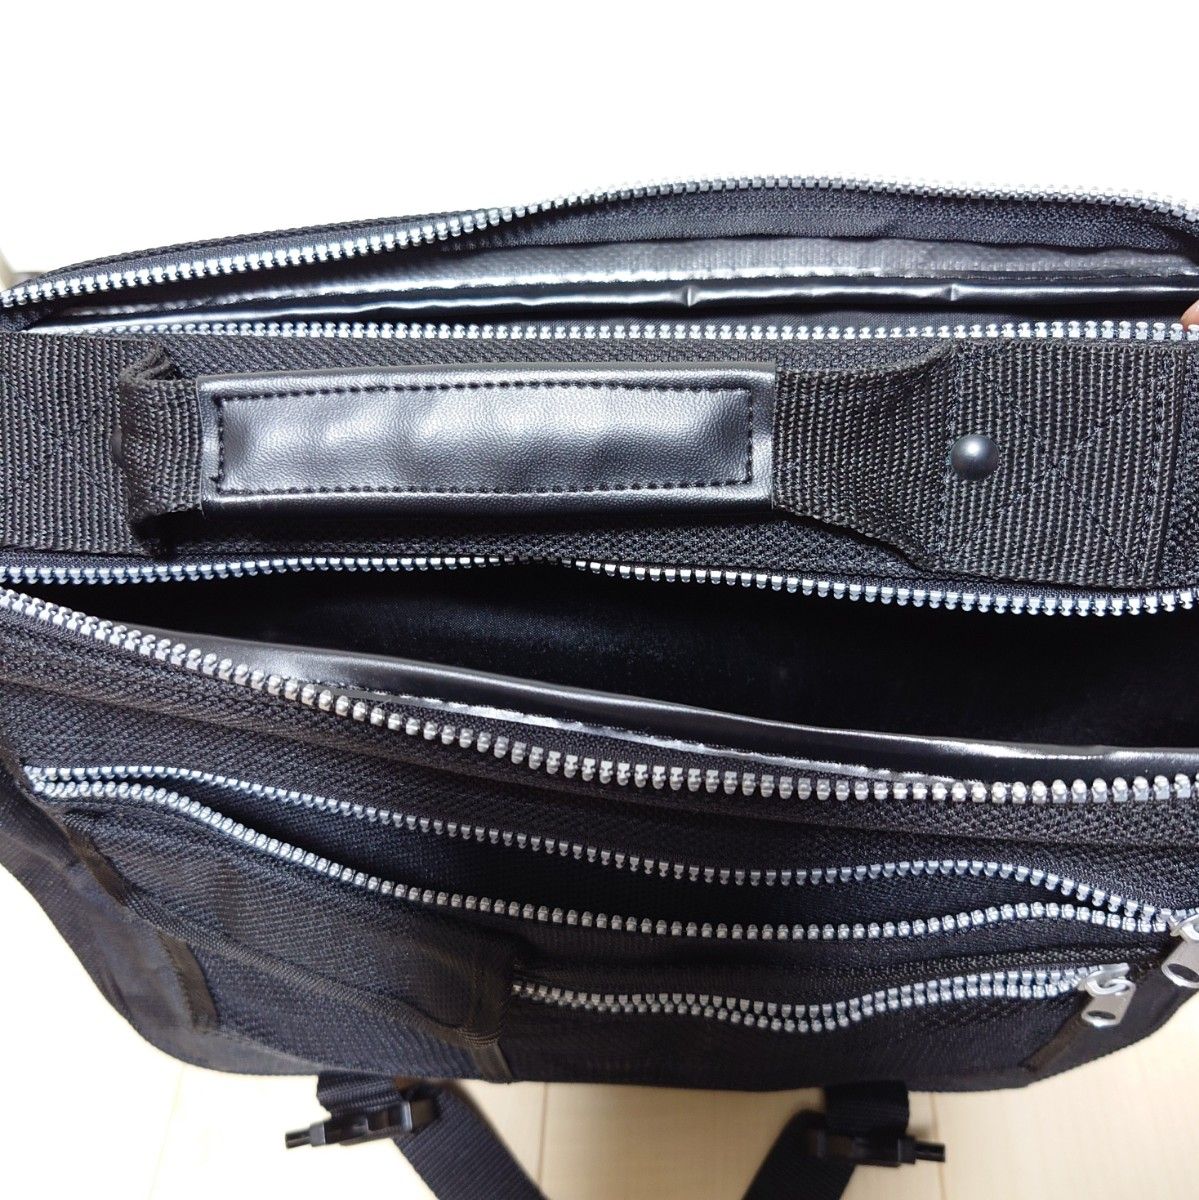 ビジネスバッグ PCバッグ ショルダーベルト付 メンズ ブラック 収納多数 美品